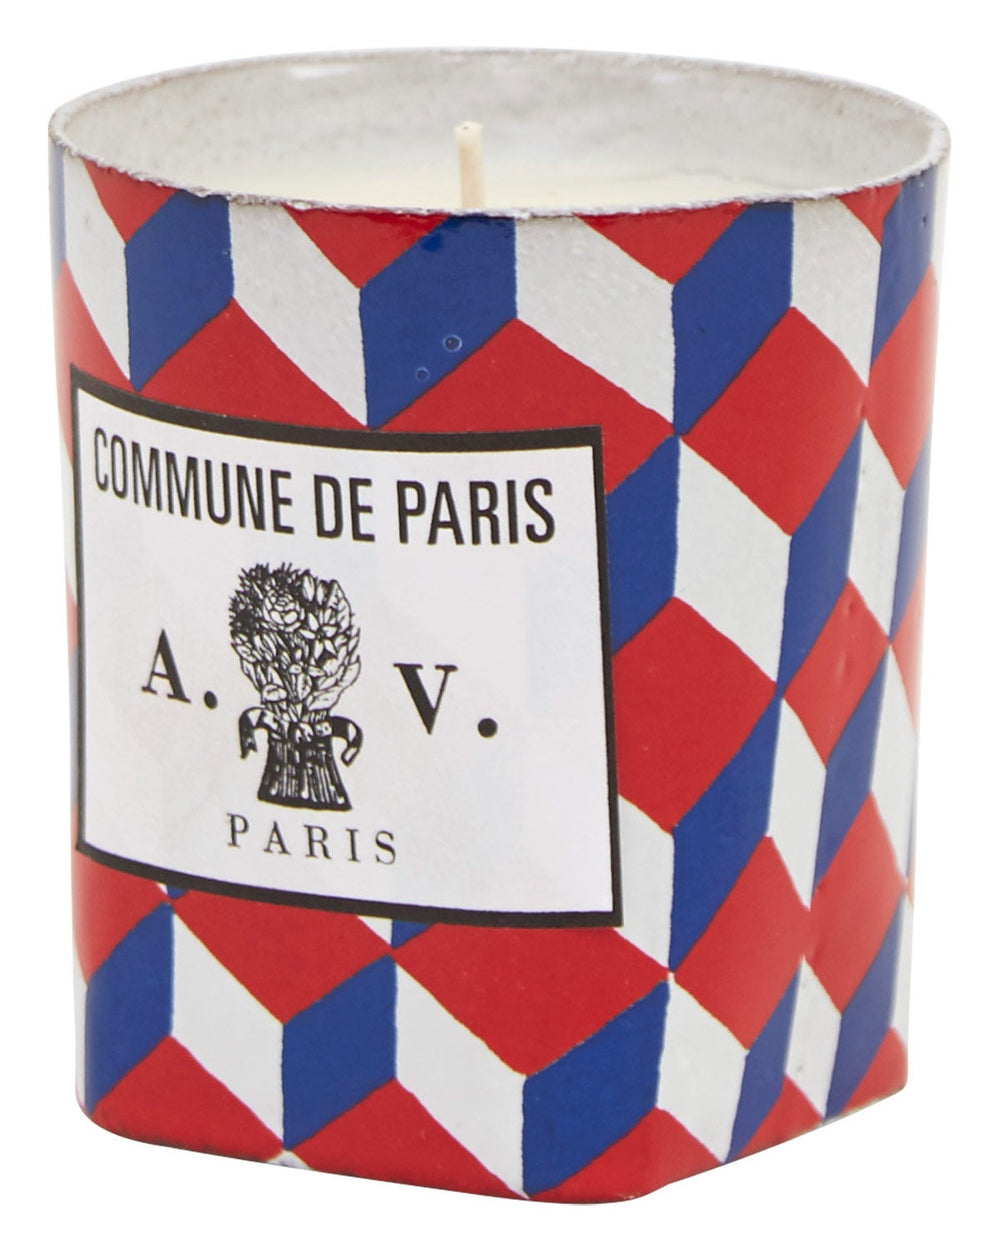 Commune de Paris Candle